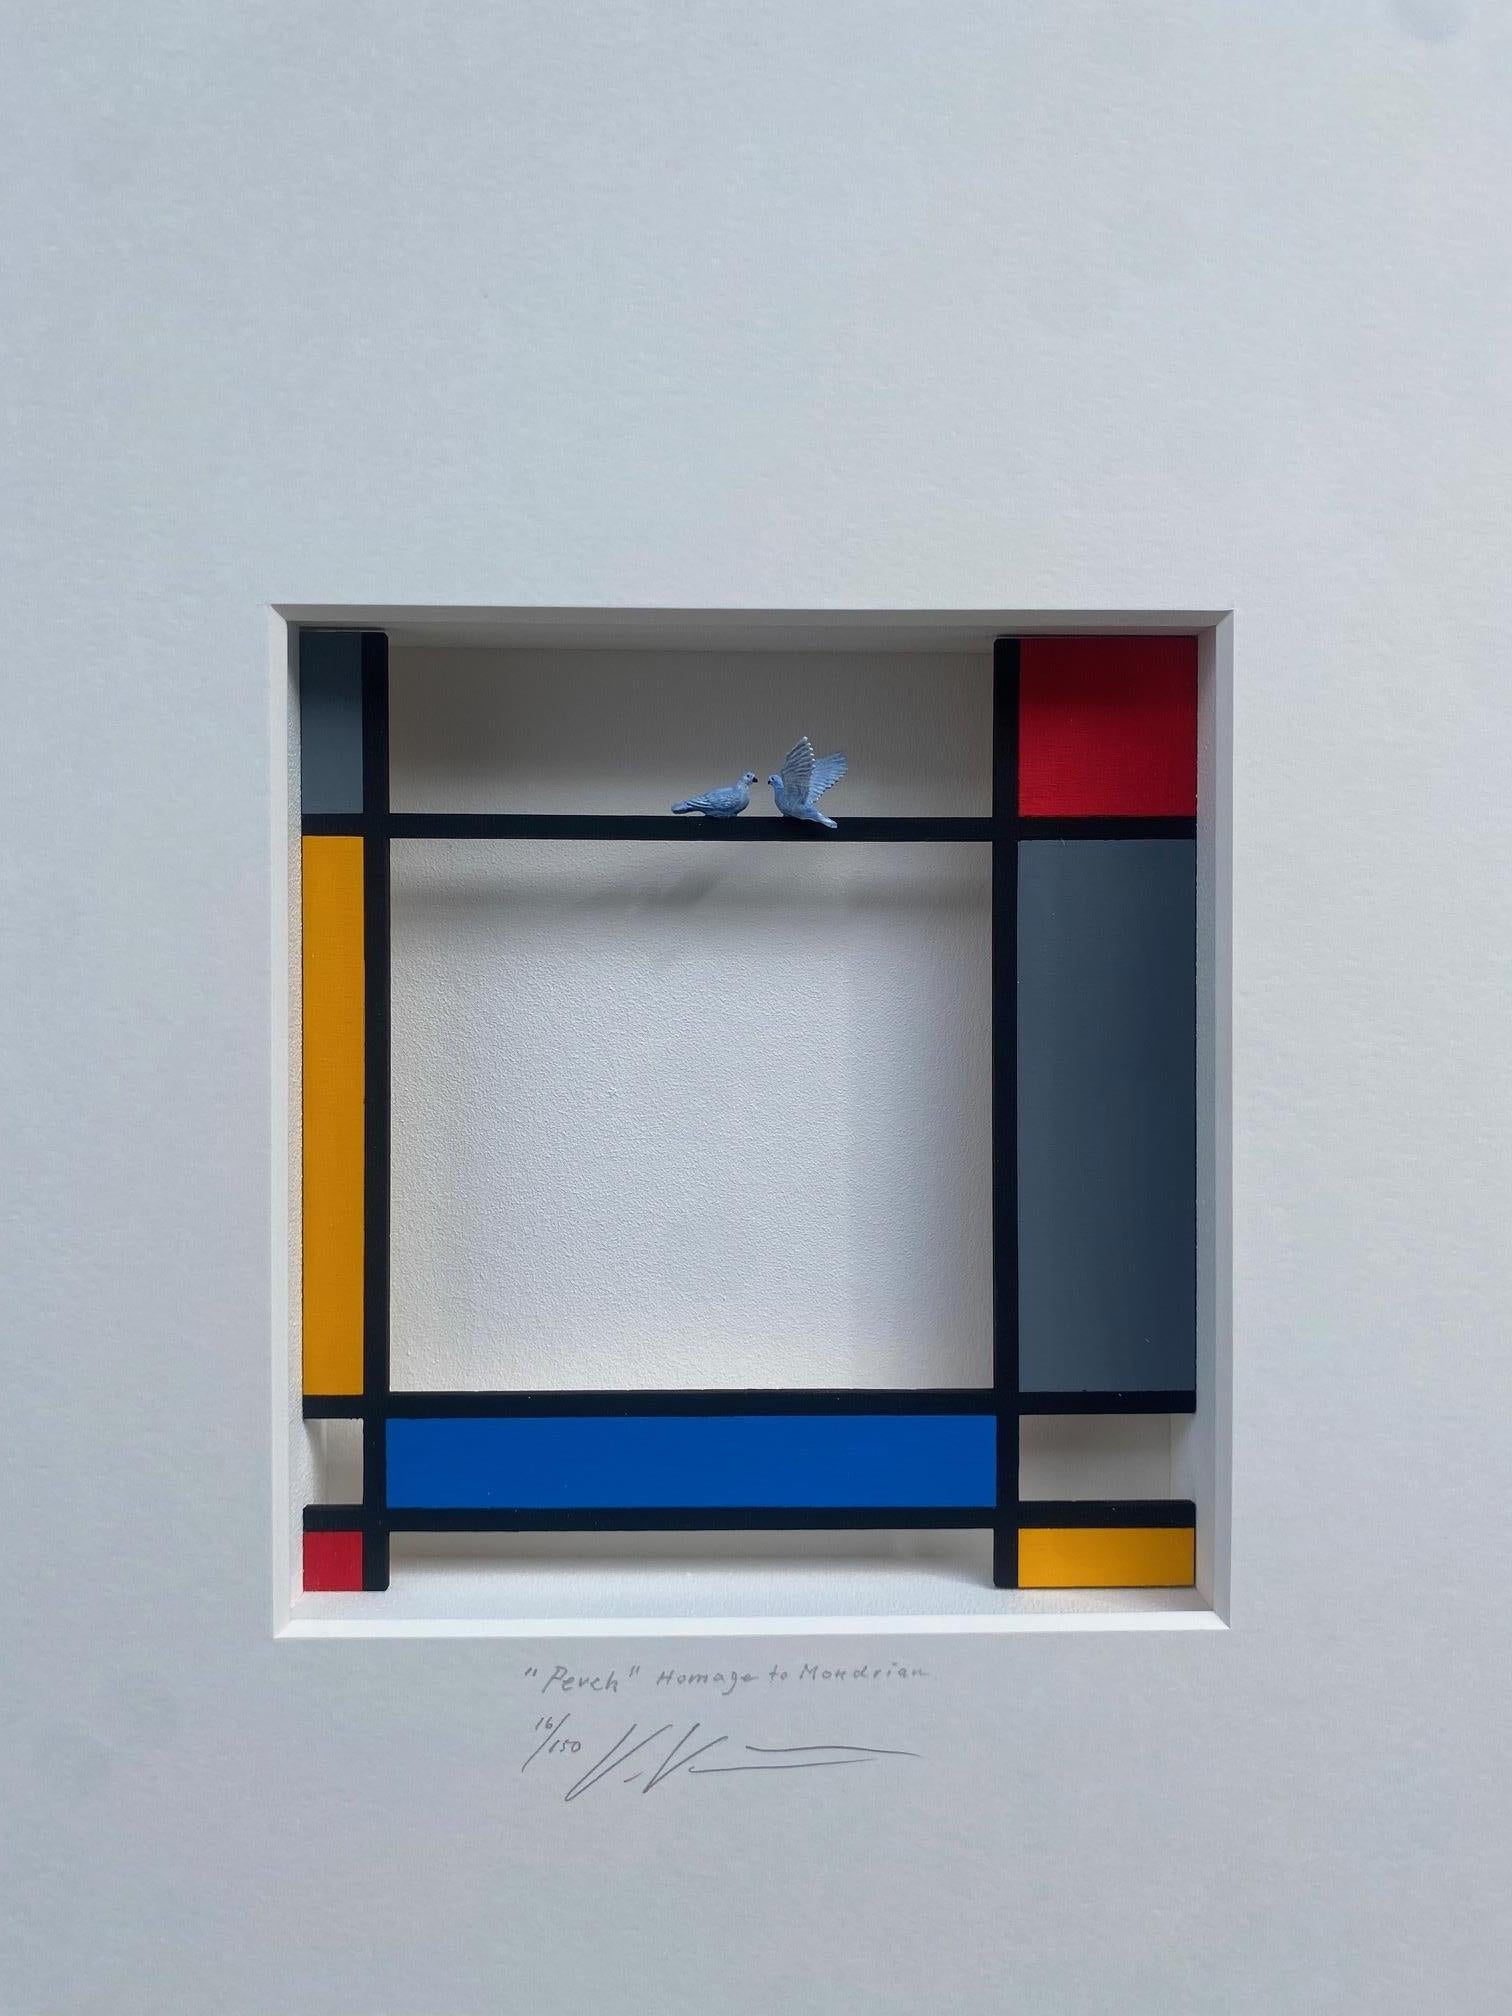 Hommage an Mondrian - Perch - zeitgenössisches Kunstwerk, Design Hommage an den niederländischen Meister (Assemblage), Mixed Media Art, von Volker Kuhn